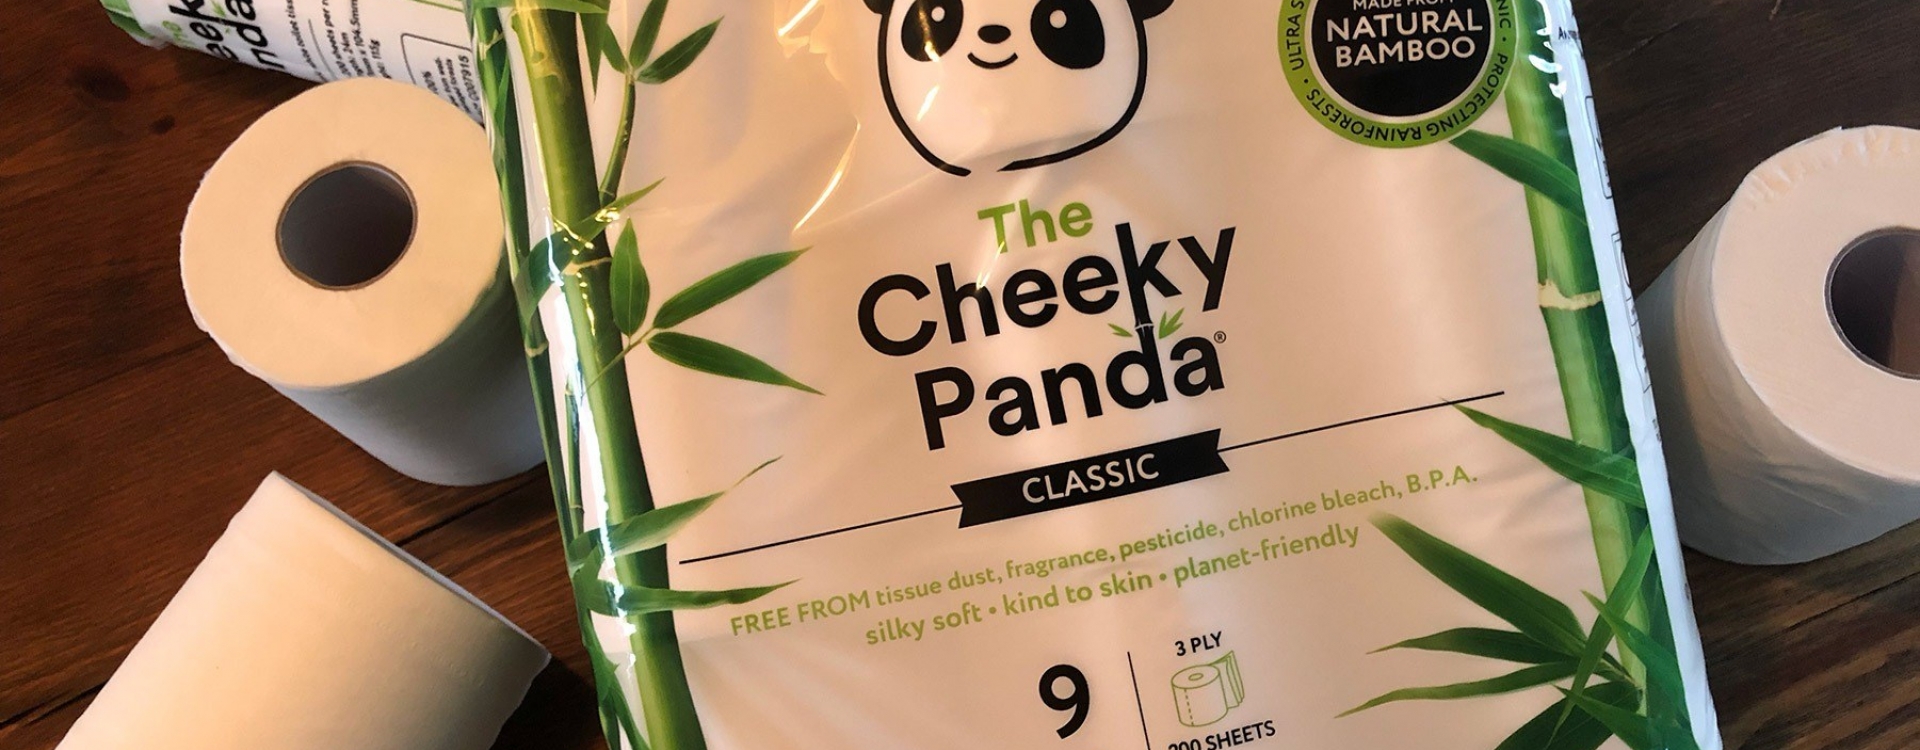 Brands cheeky panda 03